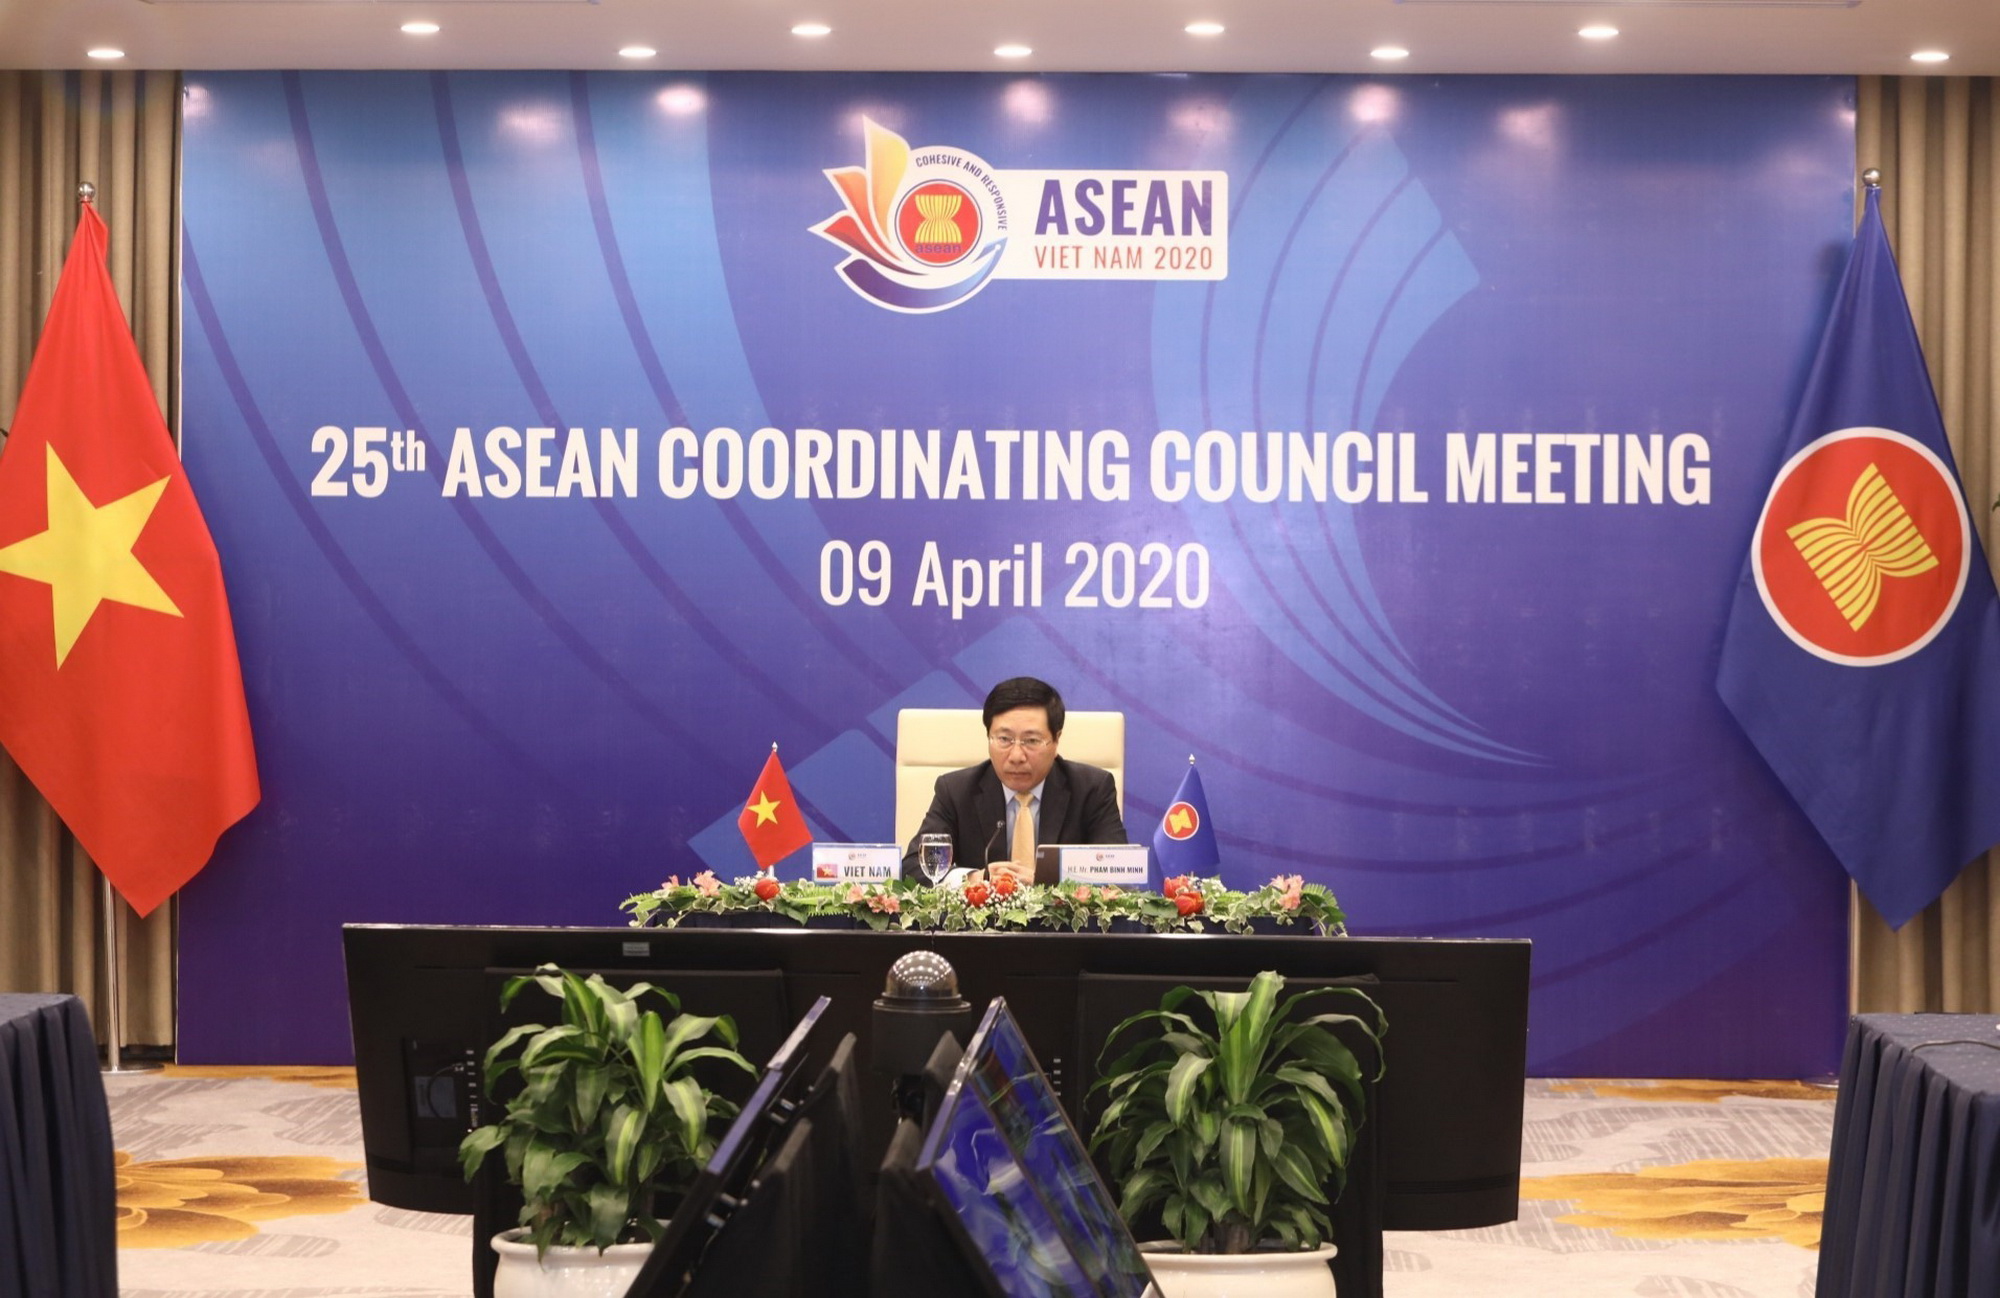 Phó Thủ tướng, Bộ trưởng Bộ Ngoại giao Phạm Bình Minh chủ trì Hội nghị trực tuyến Hội đồng điều phối ASEAN (ACC-25) lần thứ 25. (Ảnh: Văn Điệp/TTXVN)